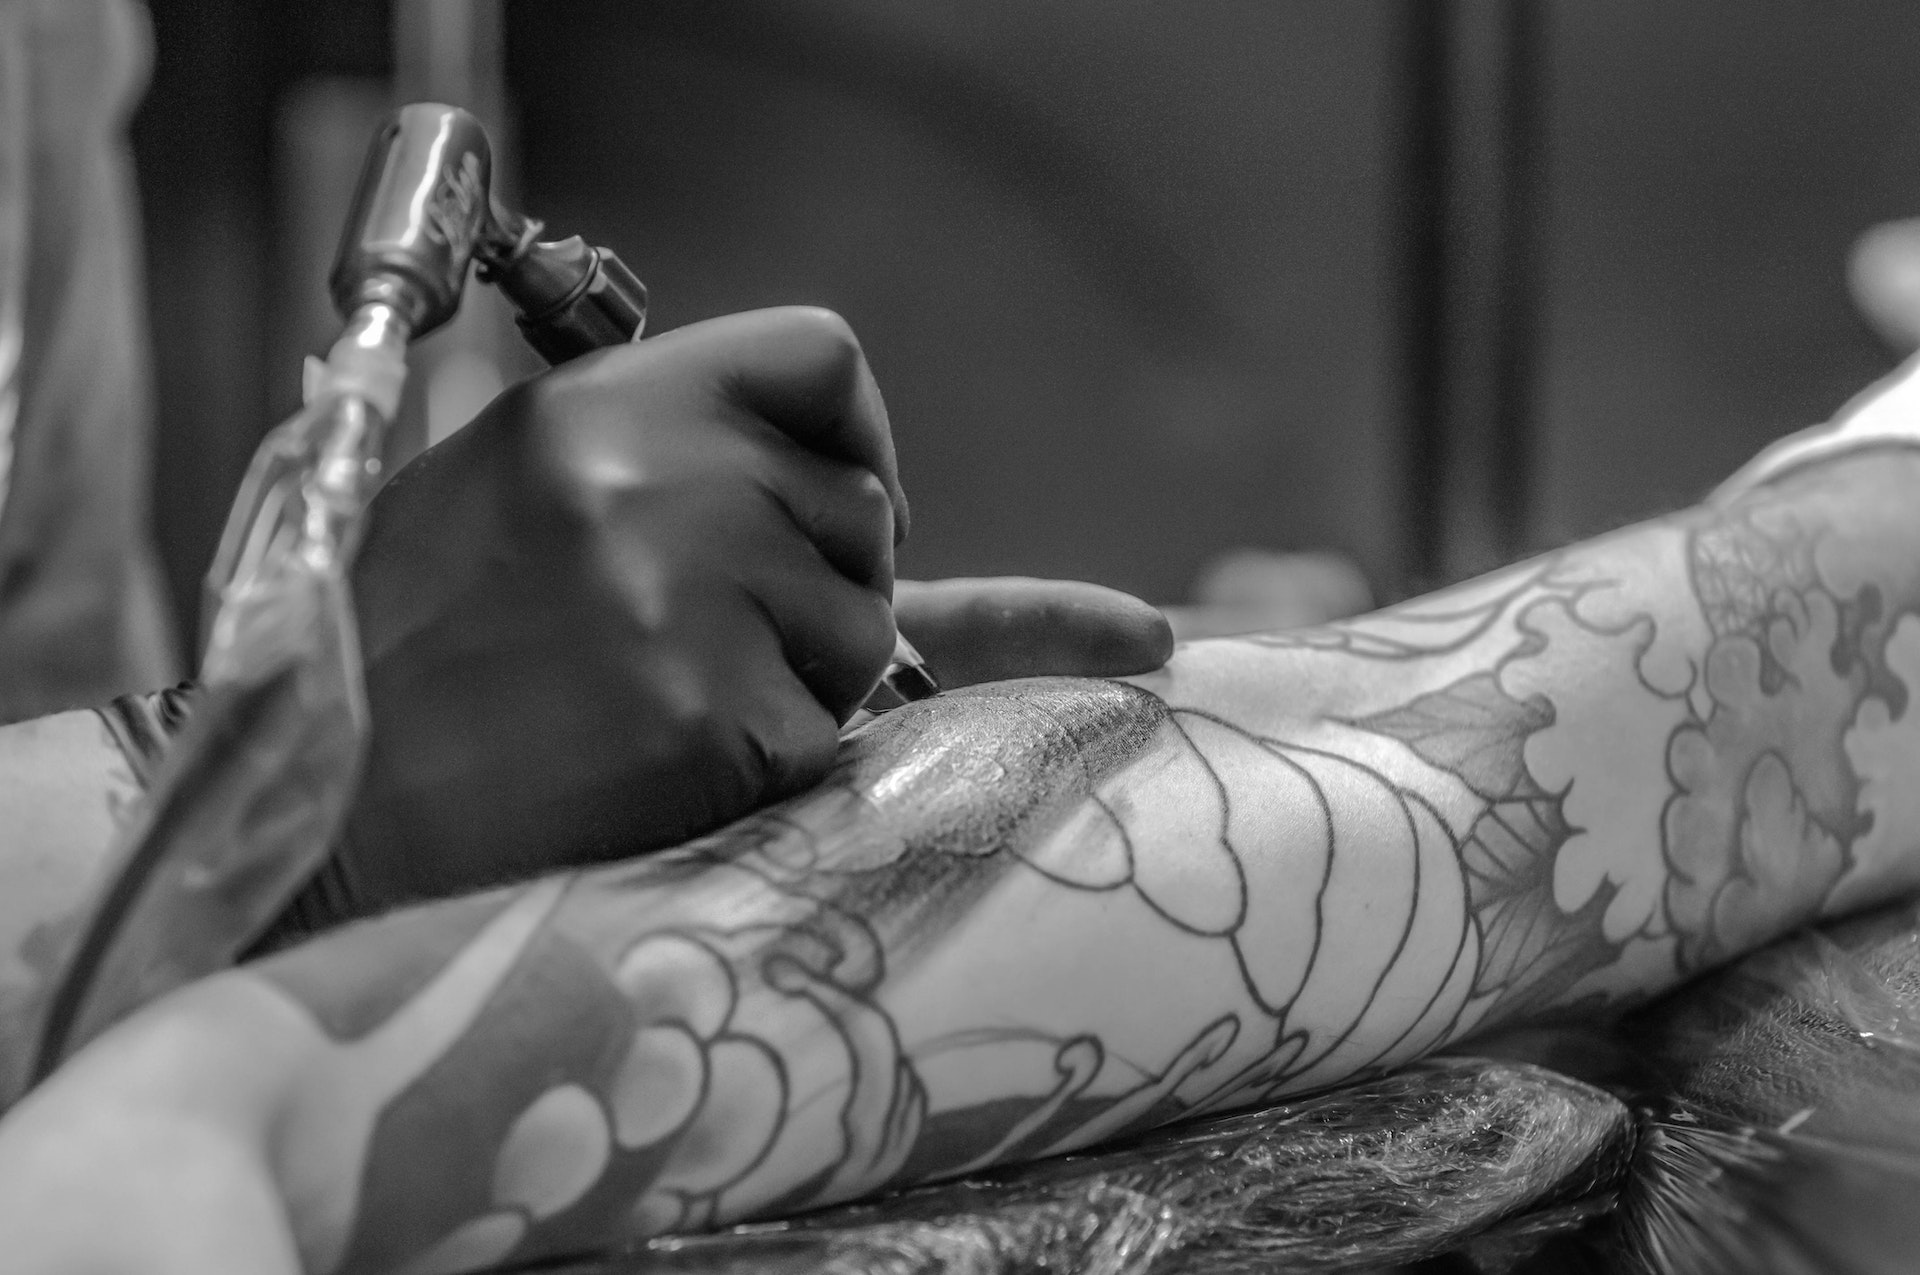 Rimuovere un tatuaggio non costa poco, in media i prezzi sono molto più alti di quelli necessari per tatuarsi e dipendono da diversi fattori.